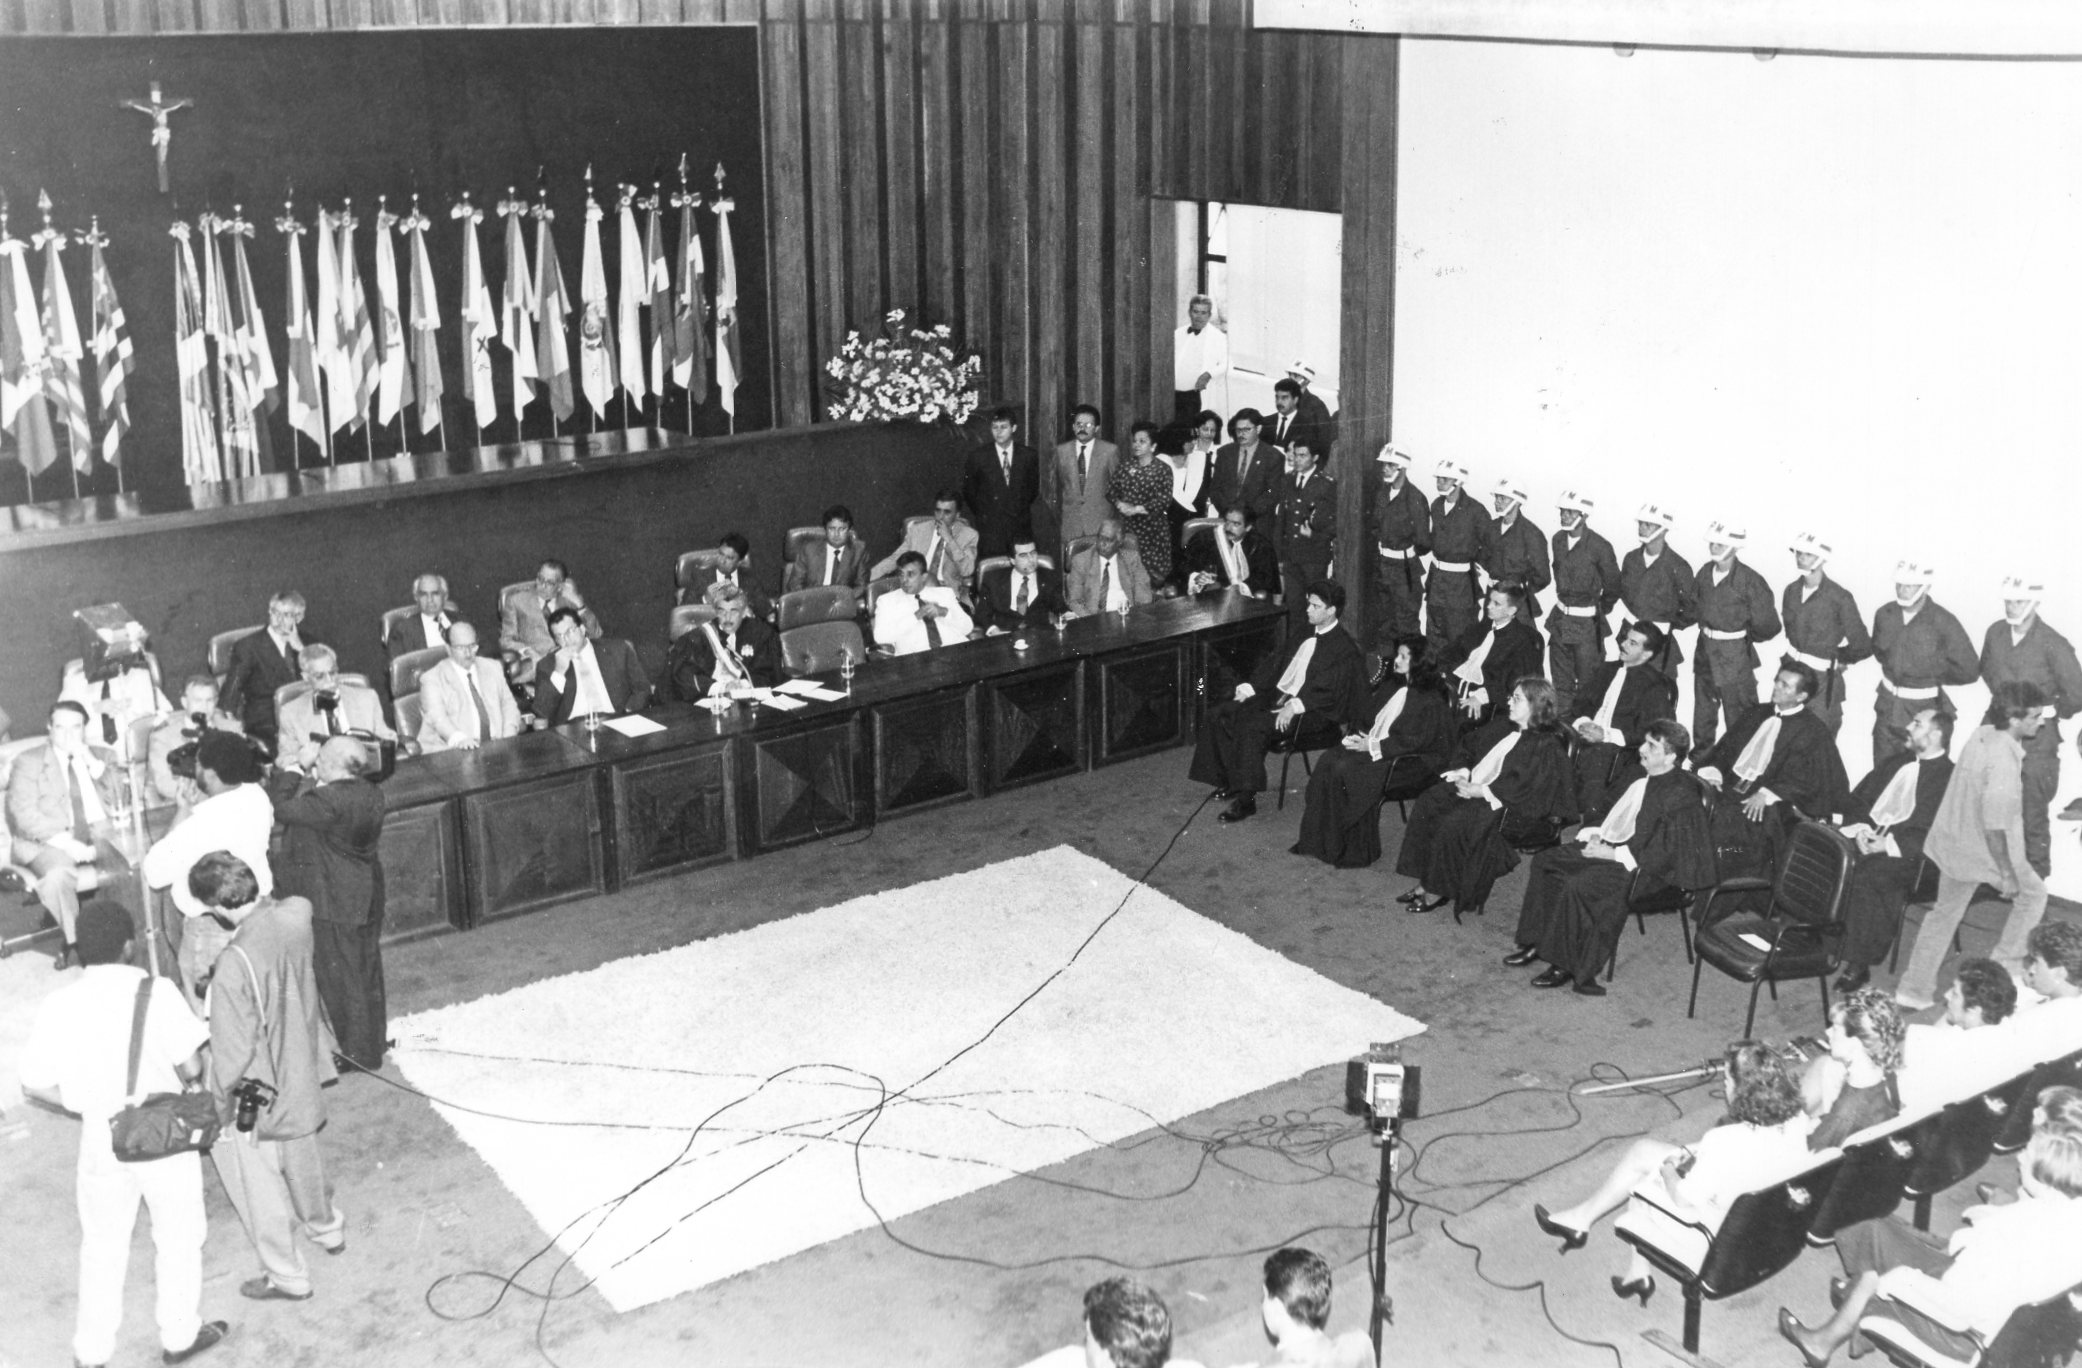 Foto exibindo os desembargadores e demais autoridades durante a sessão solene de inauguração do Tribunal Regional da 24ª Região, realizada na Assembleia Legislativa de MS, em 1993